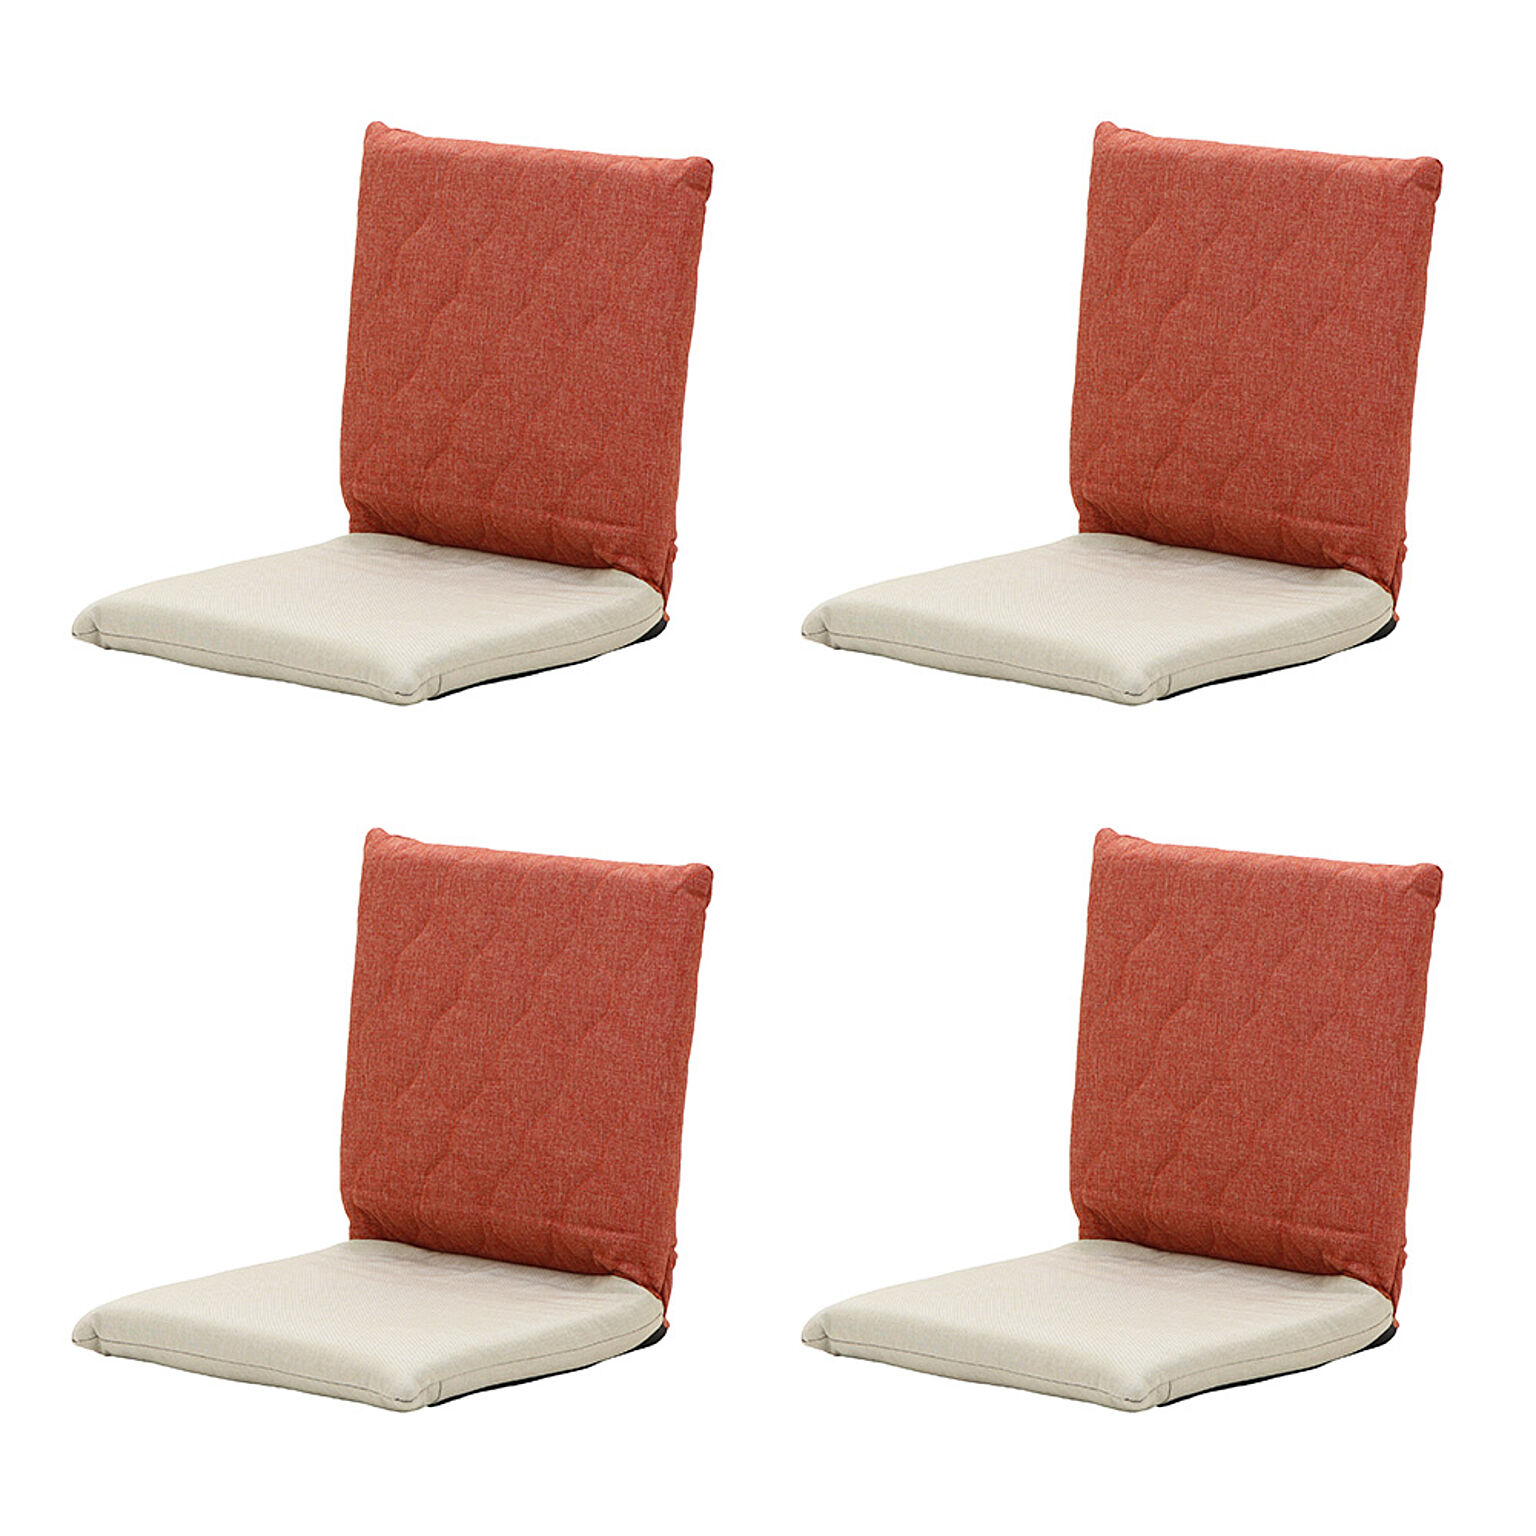 1年保証 座椅子 フロアチェア 折り畳み 4台セット コンパクト おしゃれ リクライニング 北欧 キルティング 刺繍 取っ手 RICAMO リカモ